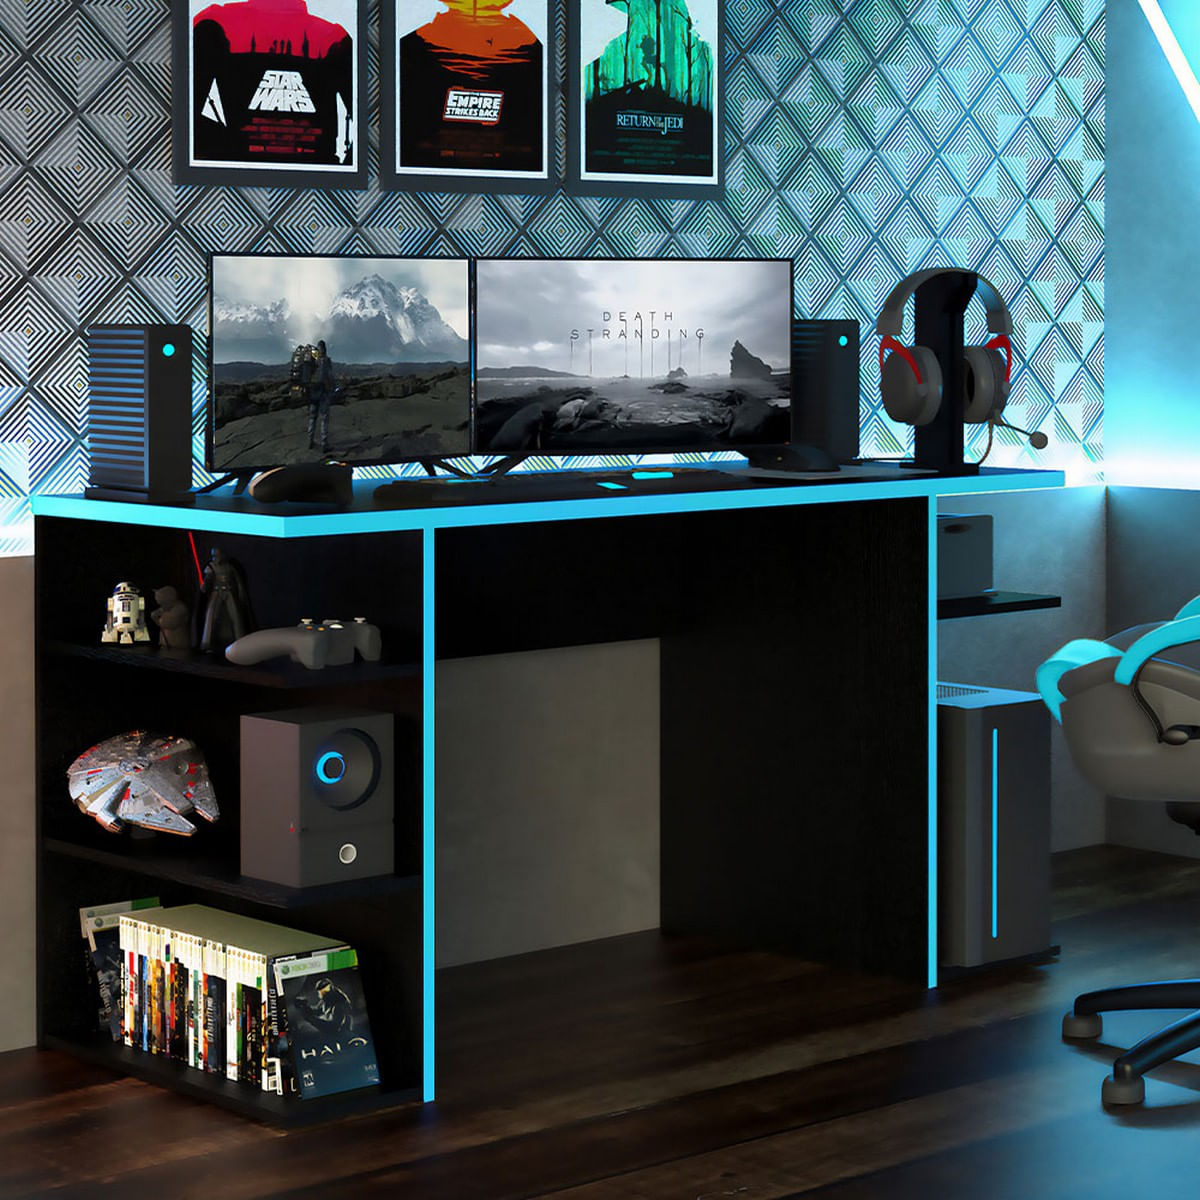 Mueble Escritorio Gamer Madesa Moderno 136cm Azul